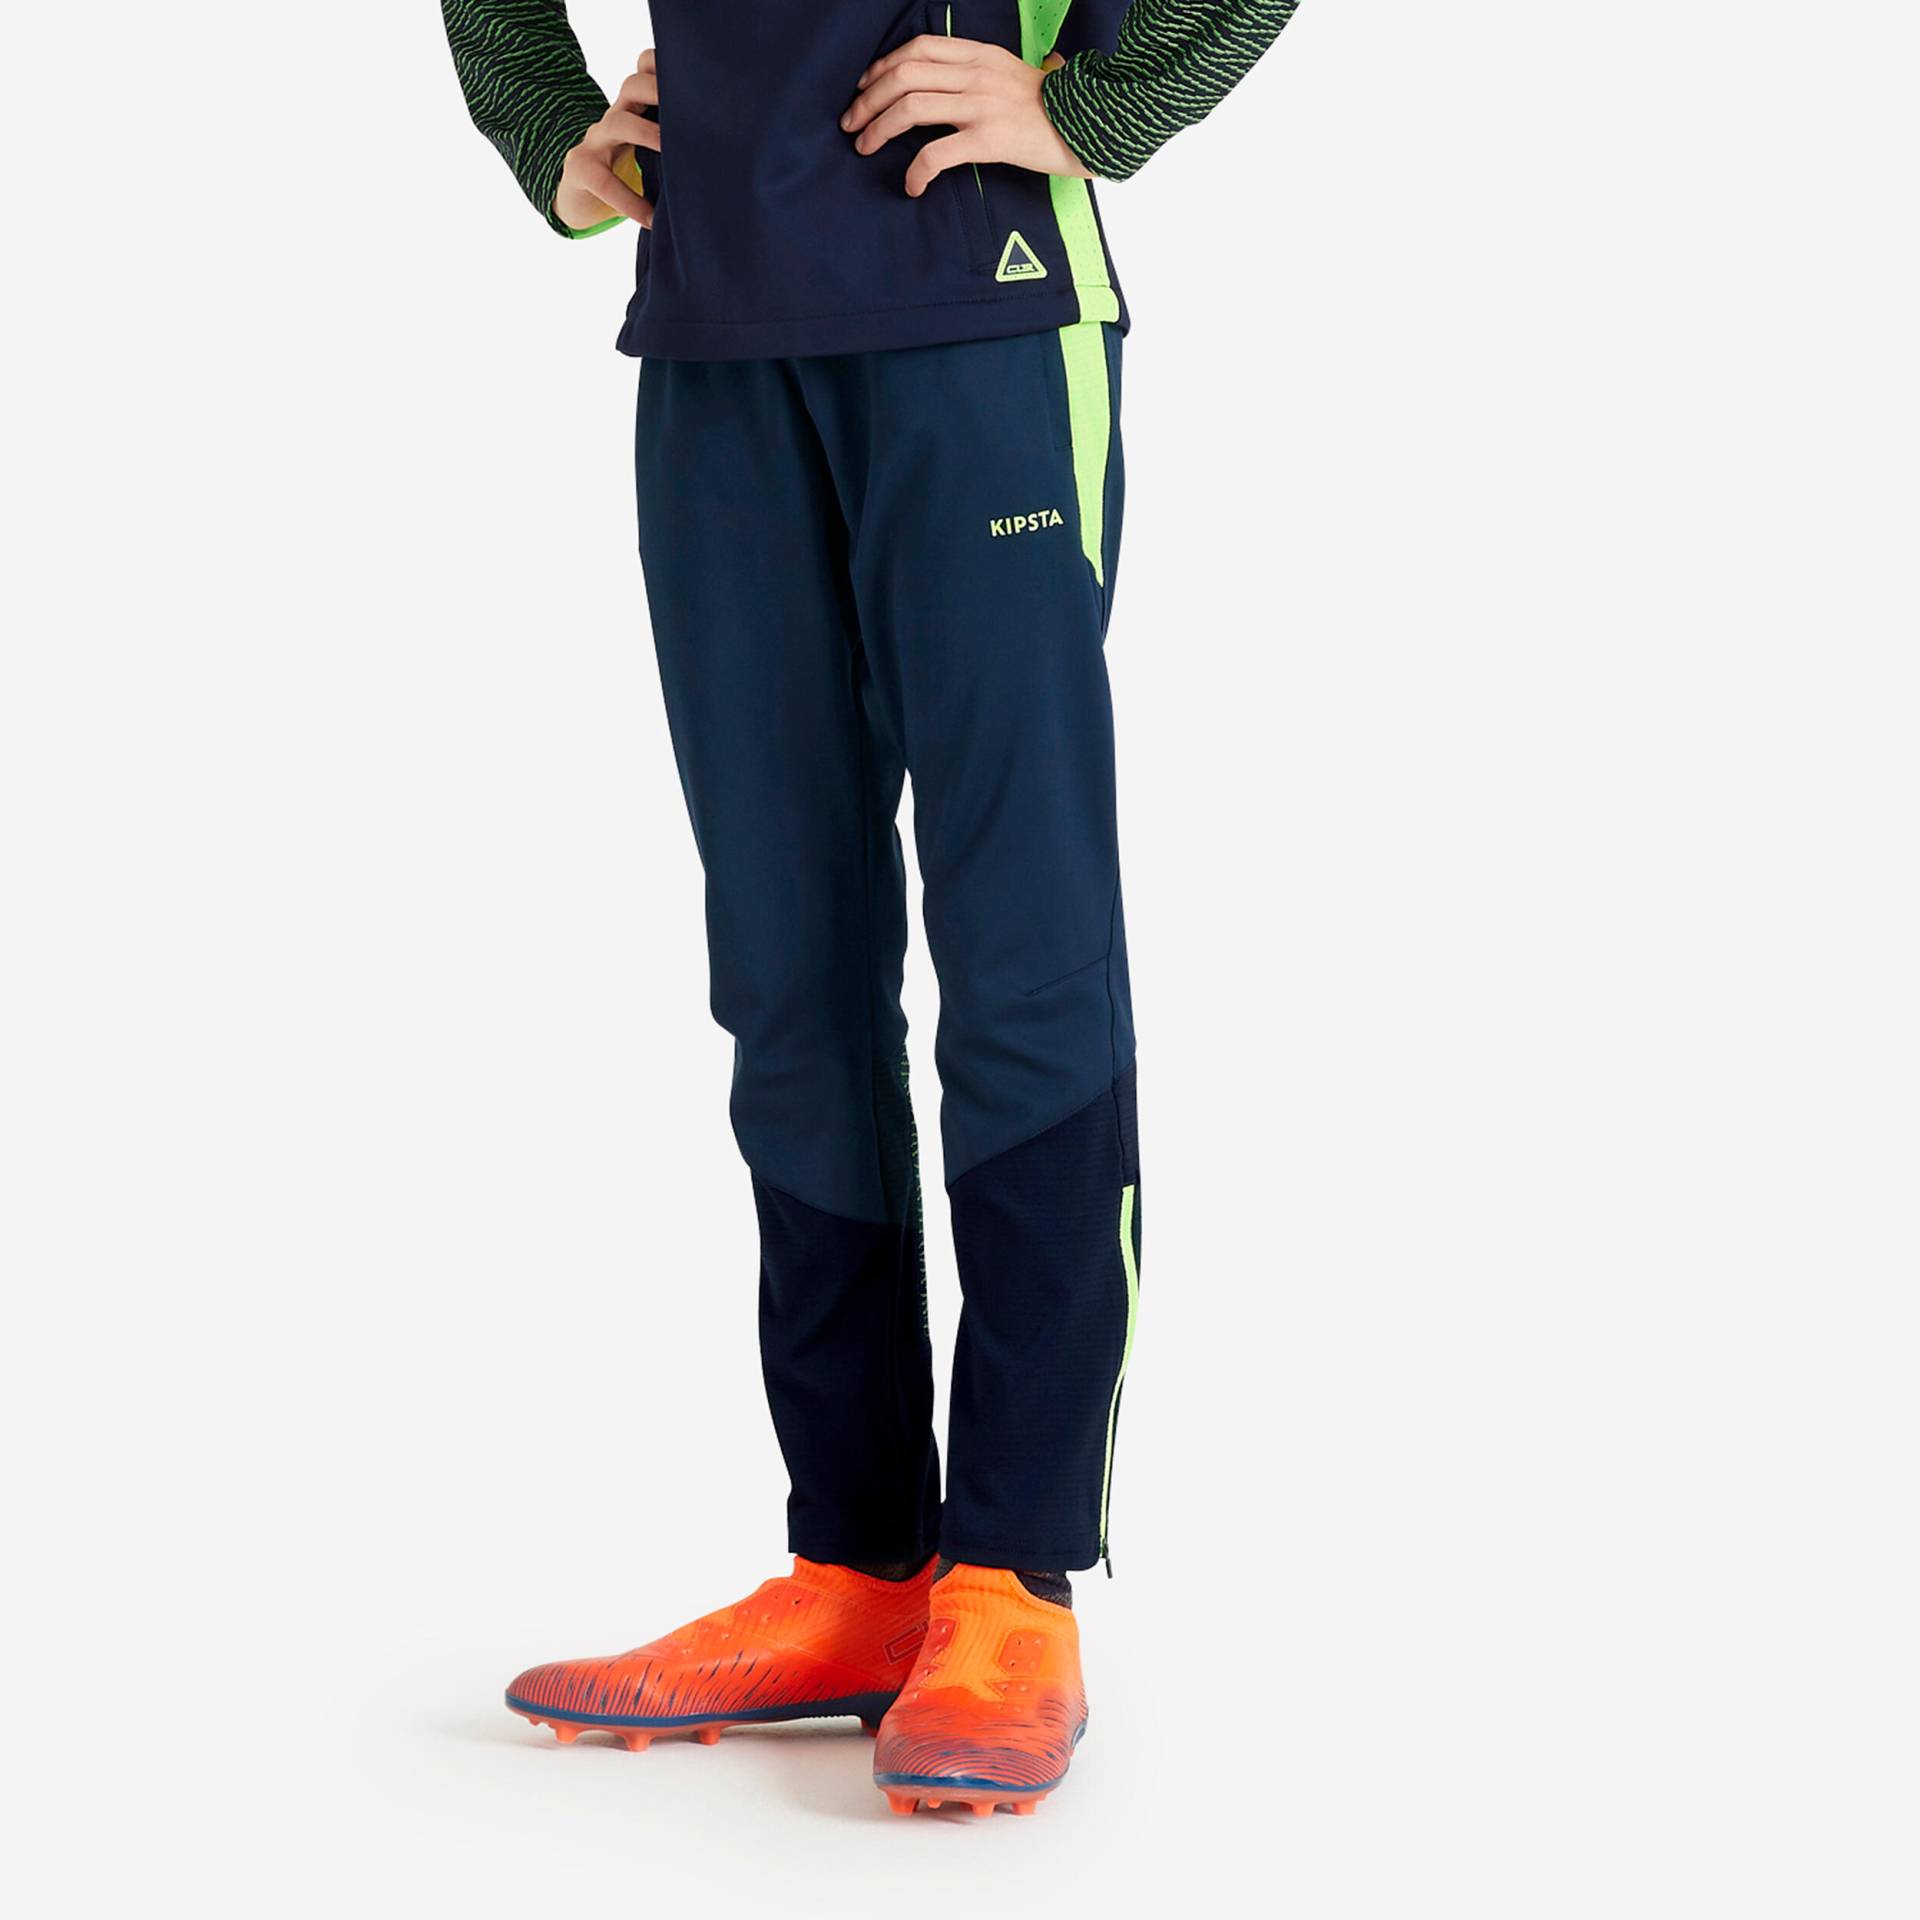 Kinder Fussball Sweatshirt mit Reissverschluss - CLR marineblau/neongelb von KIPSTA